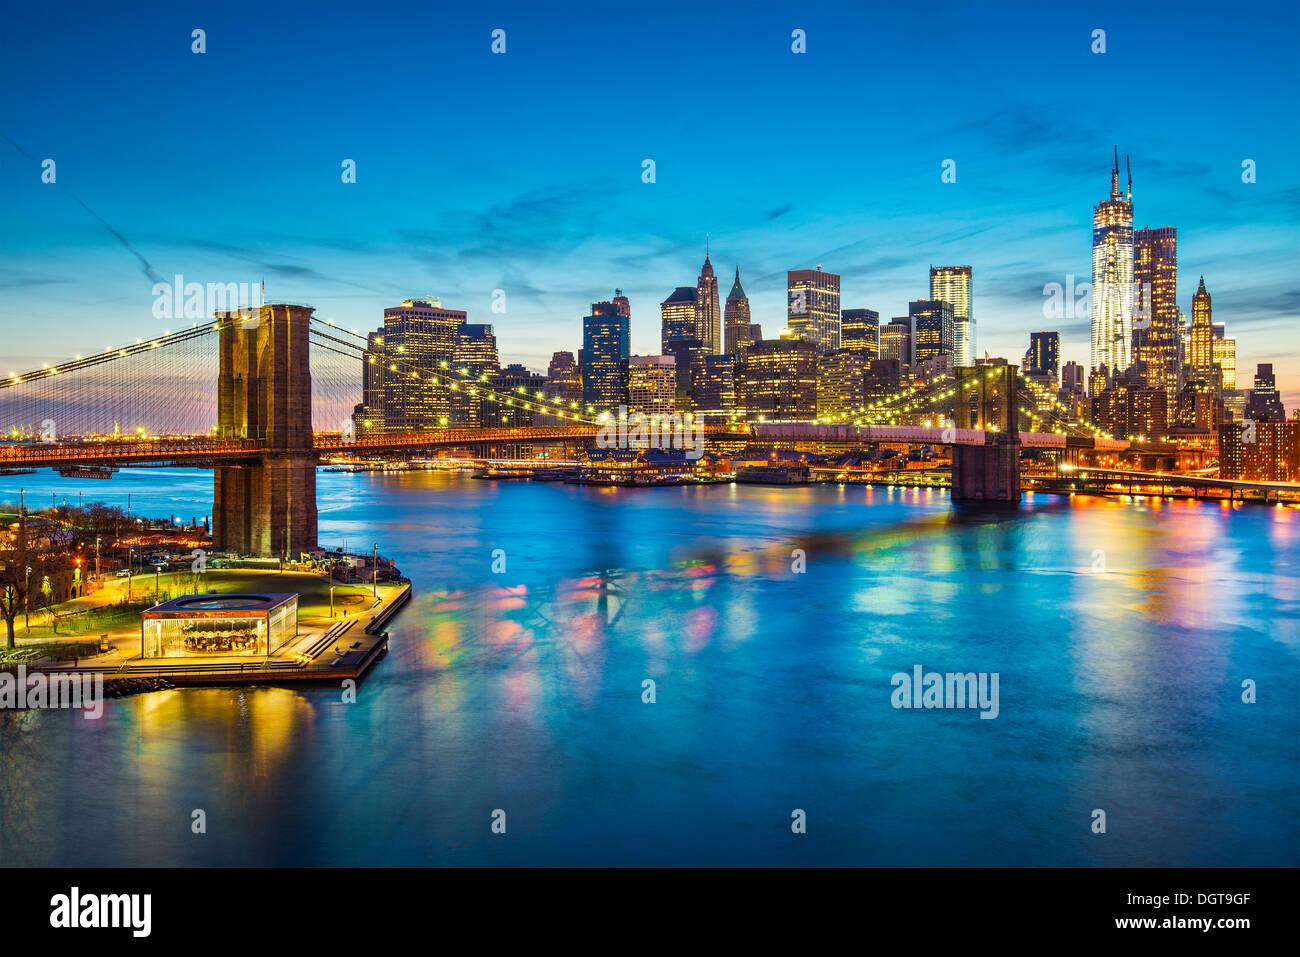 Vue de la ville de New York sur l'East River vers le quartier financier dans le borough de Manhattan. Banque D'Images